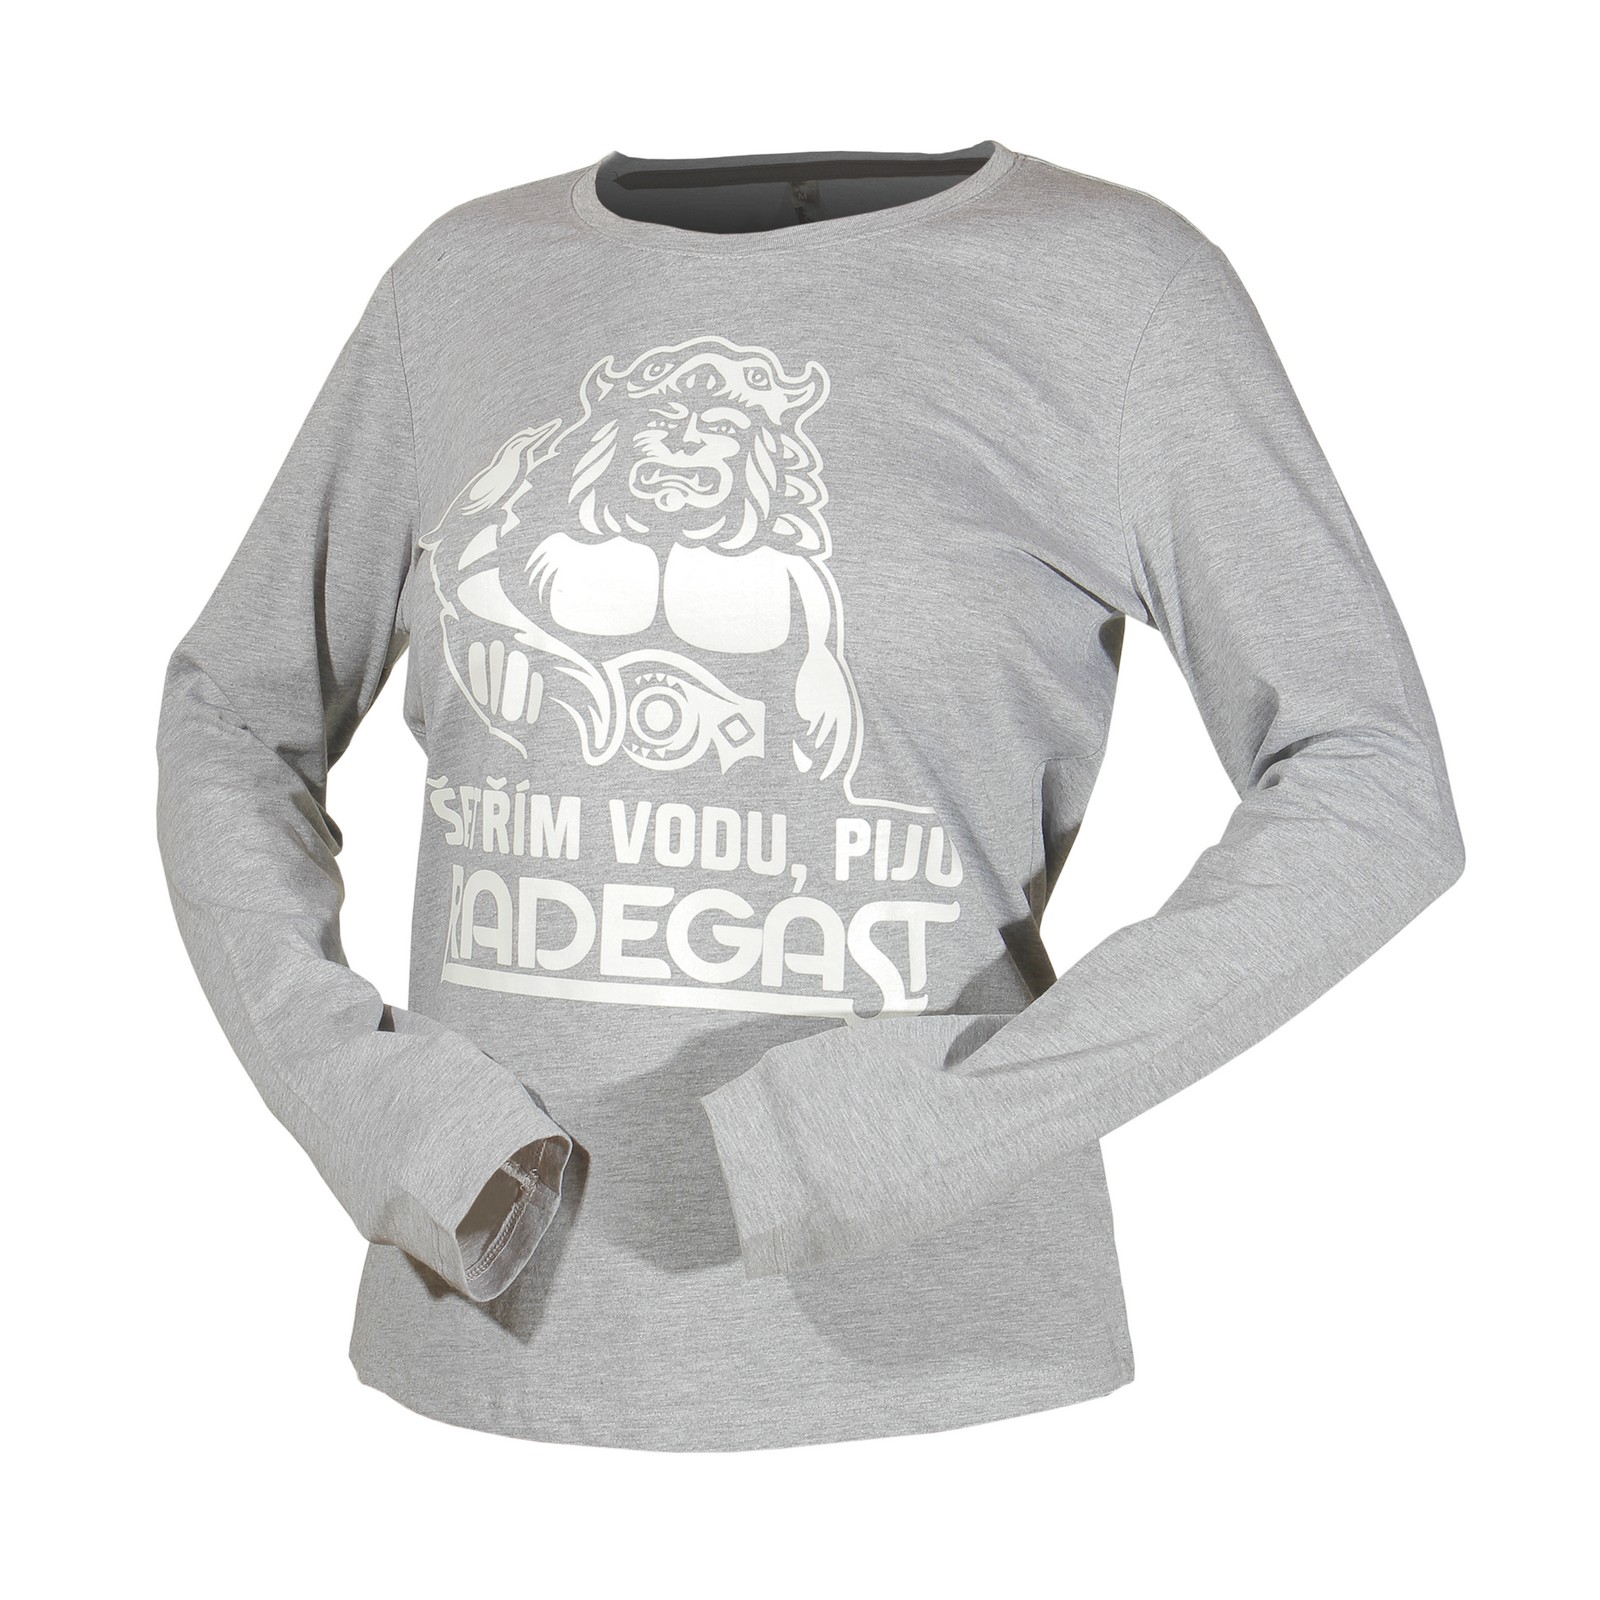 T-shirt Radegast grey for women